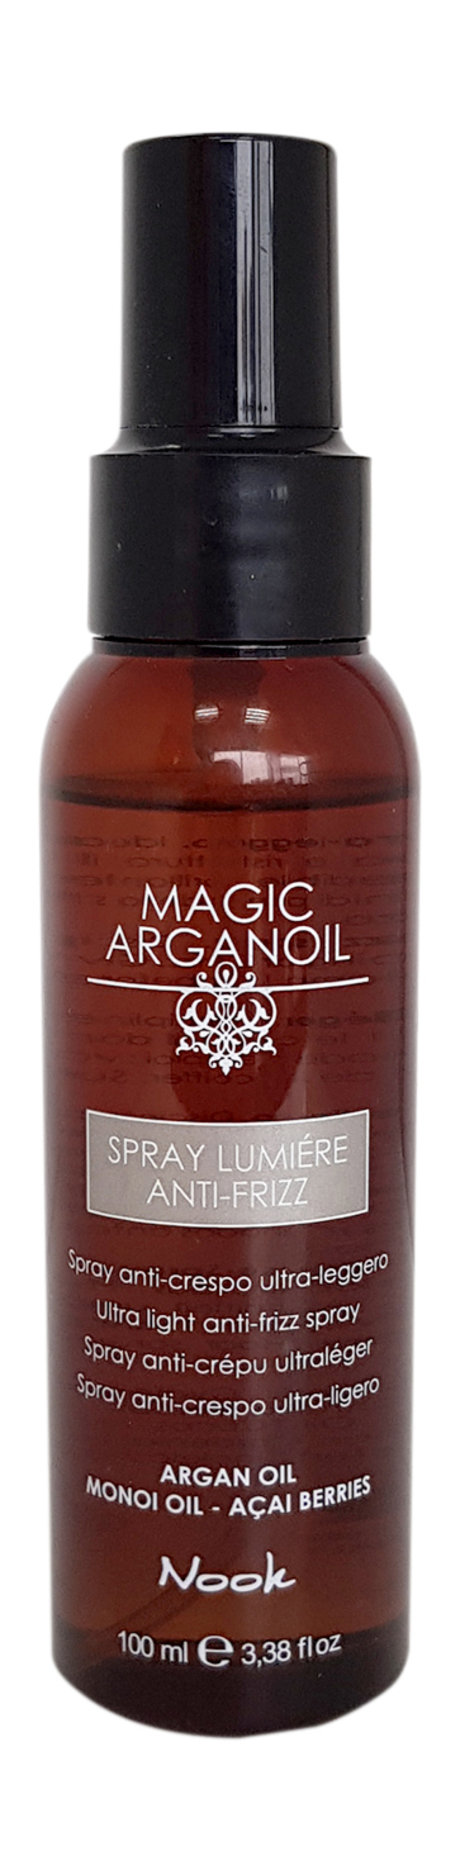 nook magic arganoil spray lumiere anti-friz